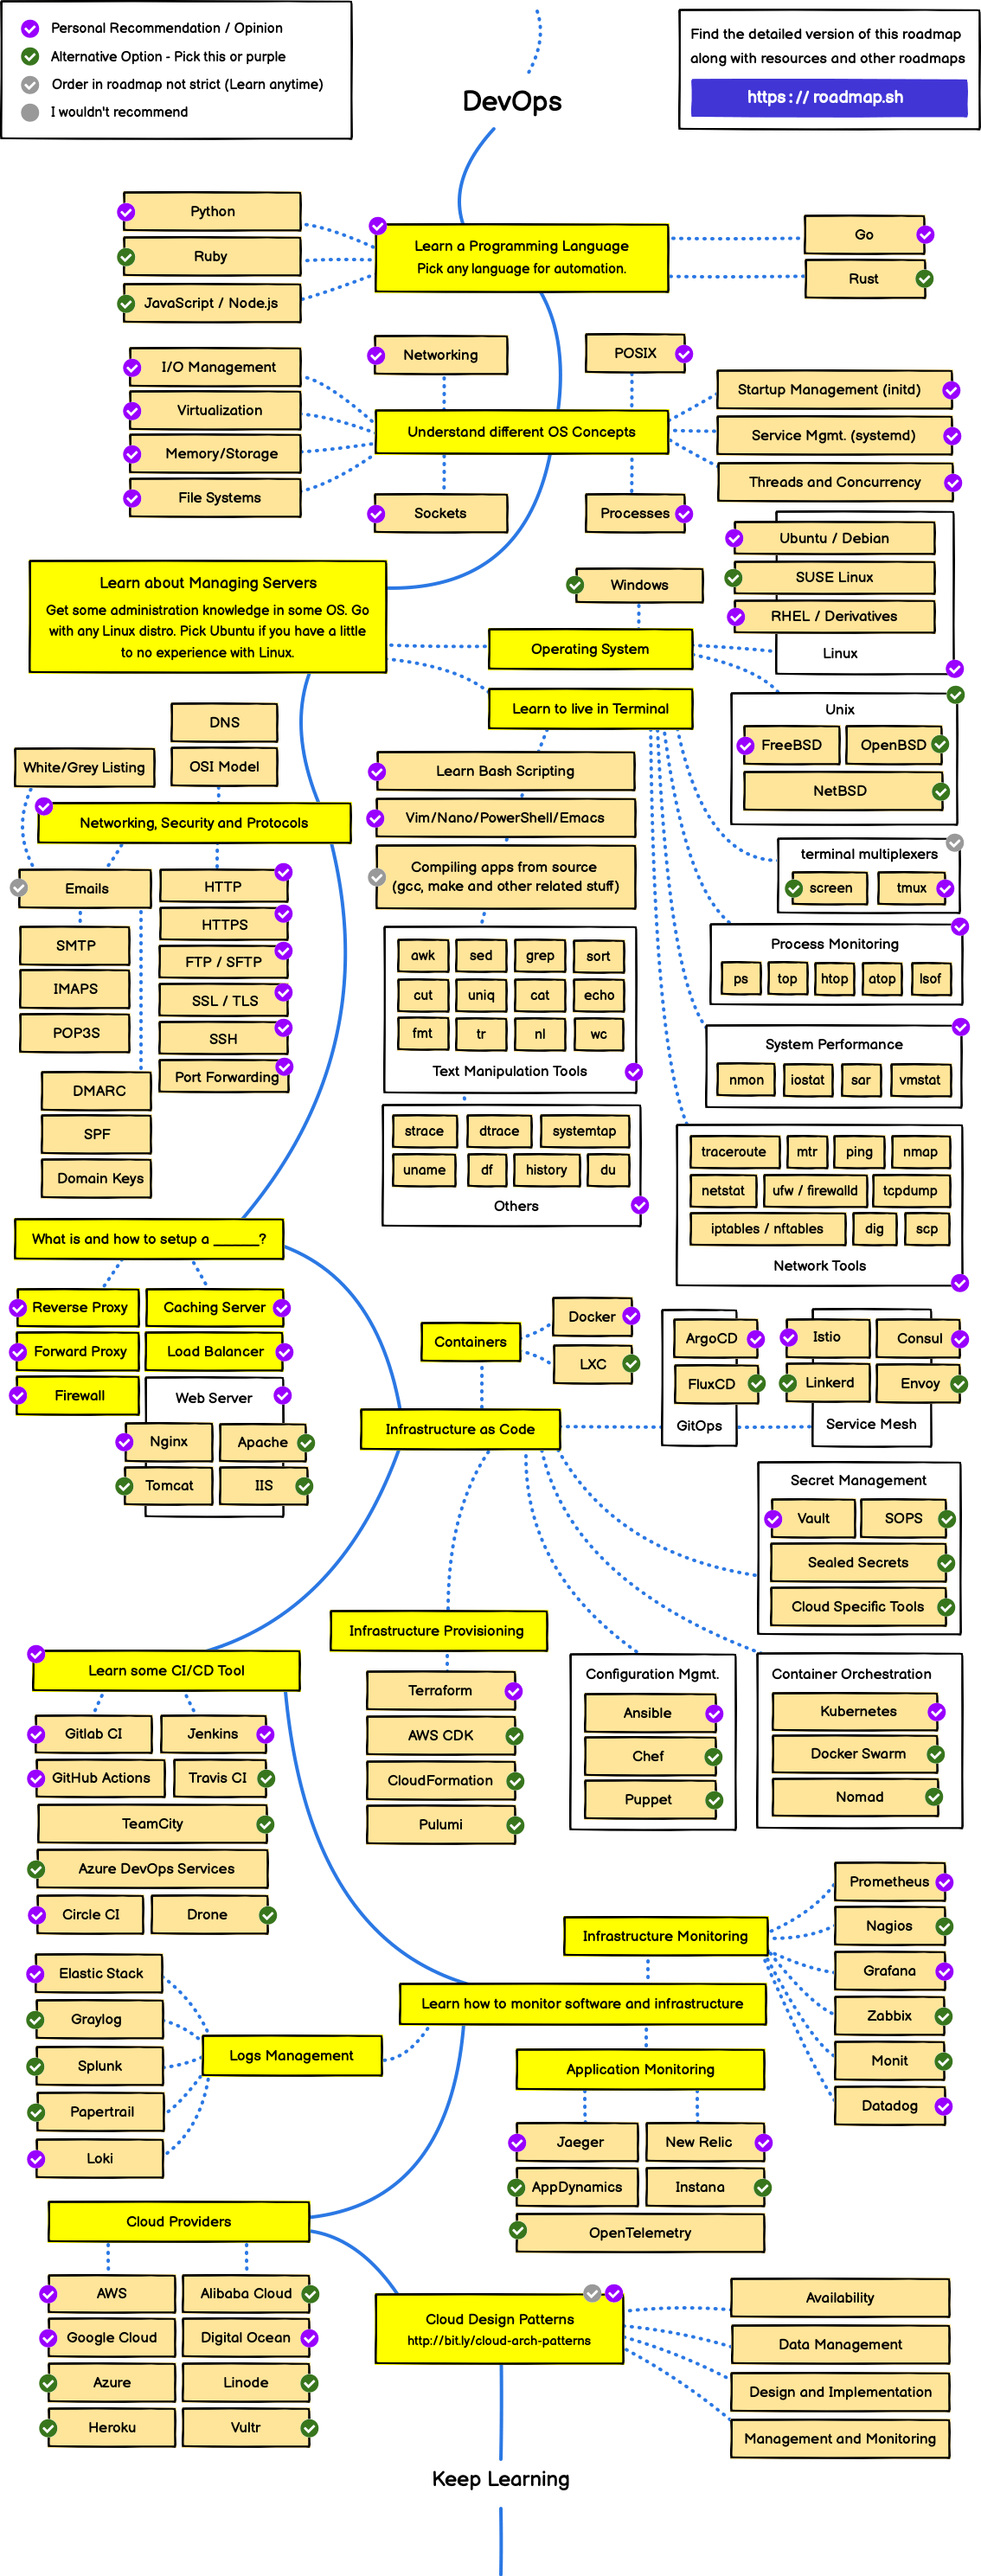 DevOps Roadmap 2022 PDF